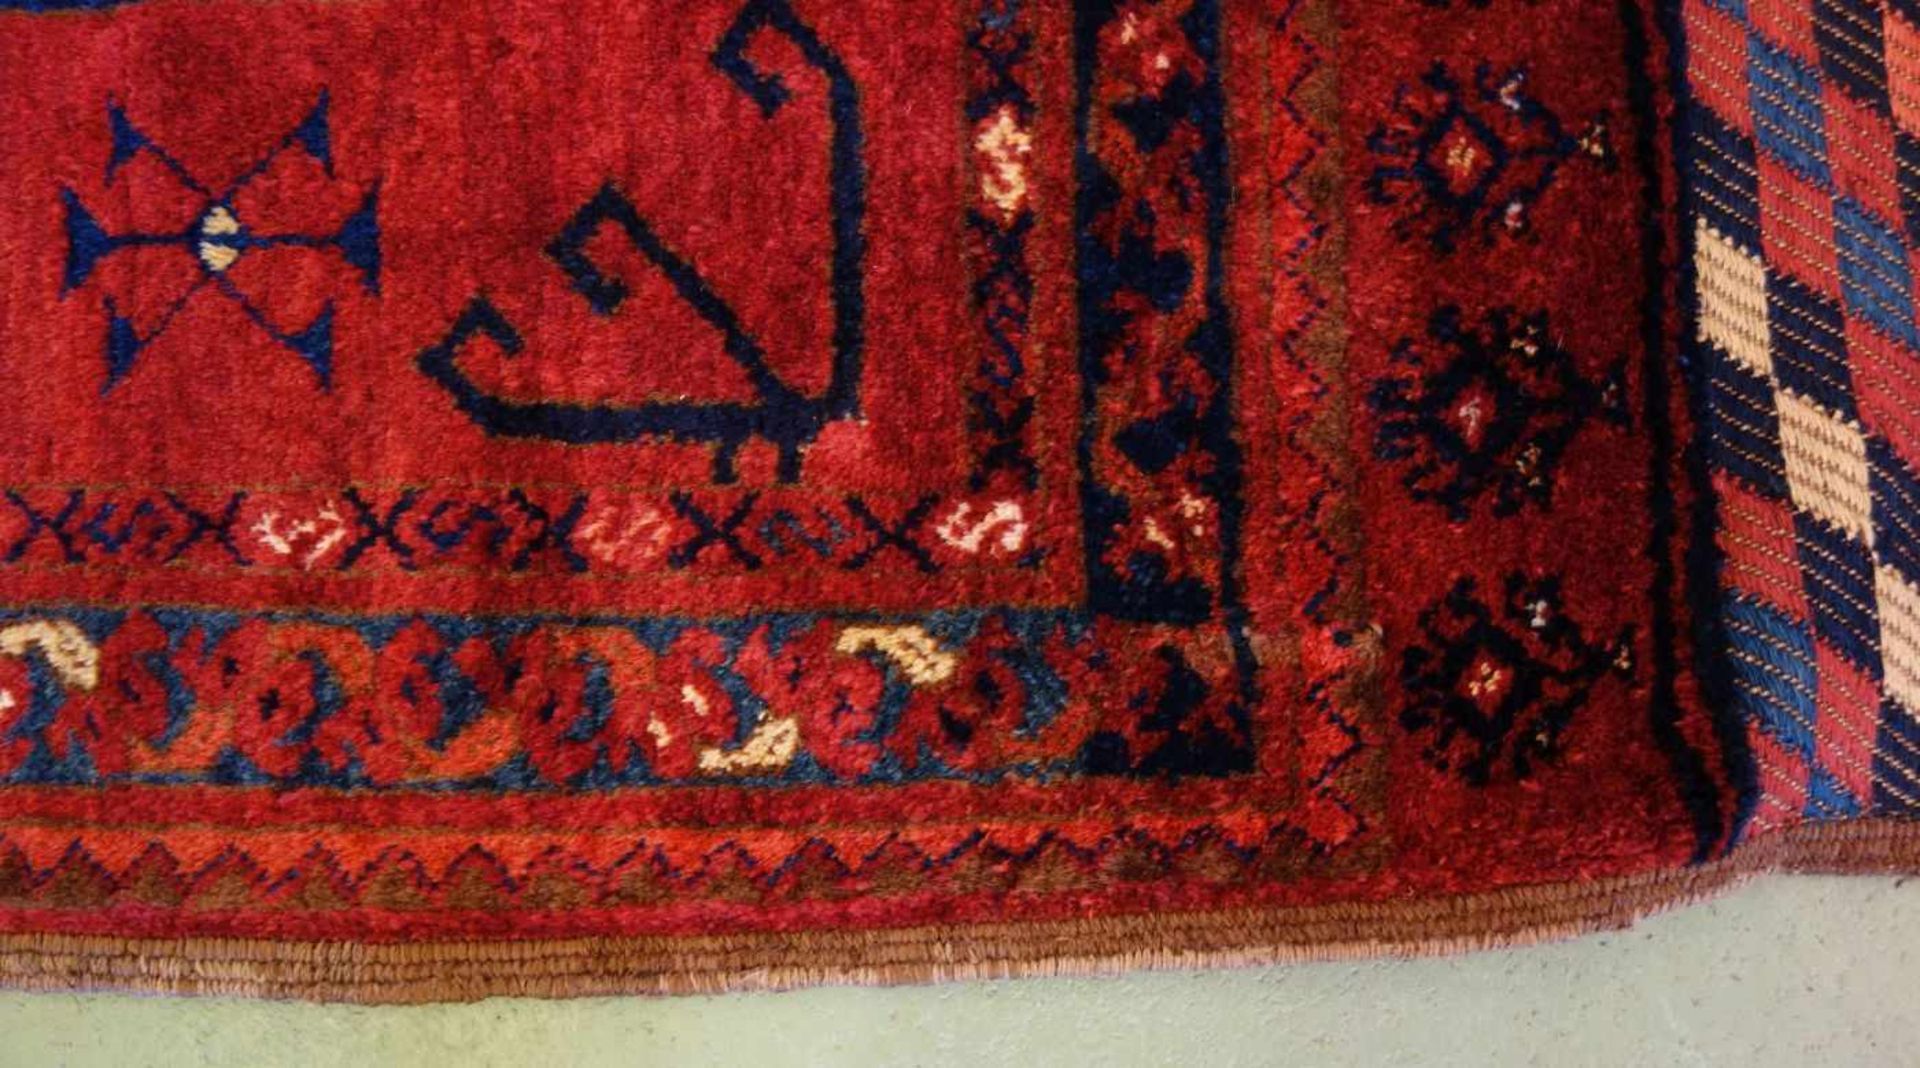 SELTENER KLEINER TEPPICH / ERSARI / carpet, Turkmenen / Westturkestan, wohl 2. H. 19. Jh., wohl - Image 8 of 12